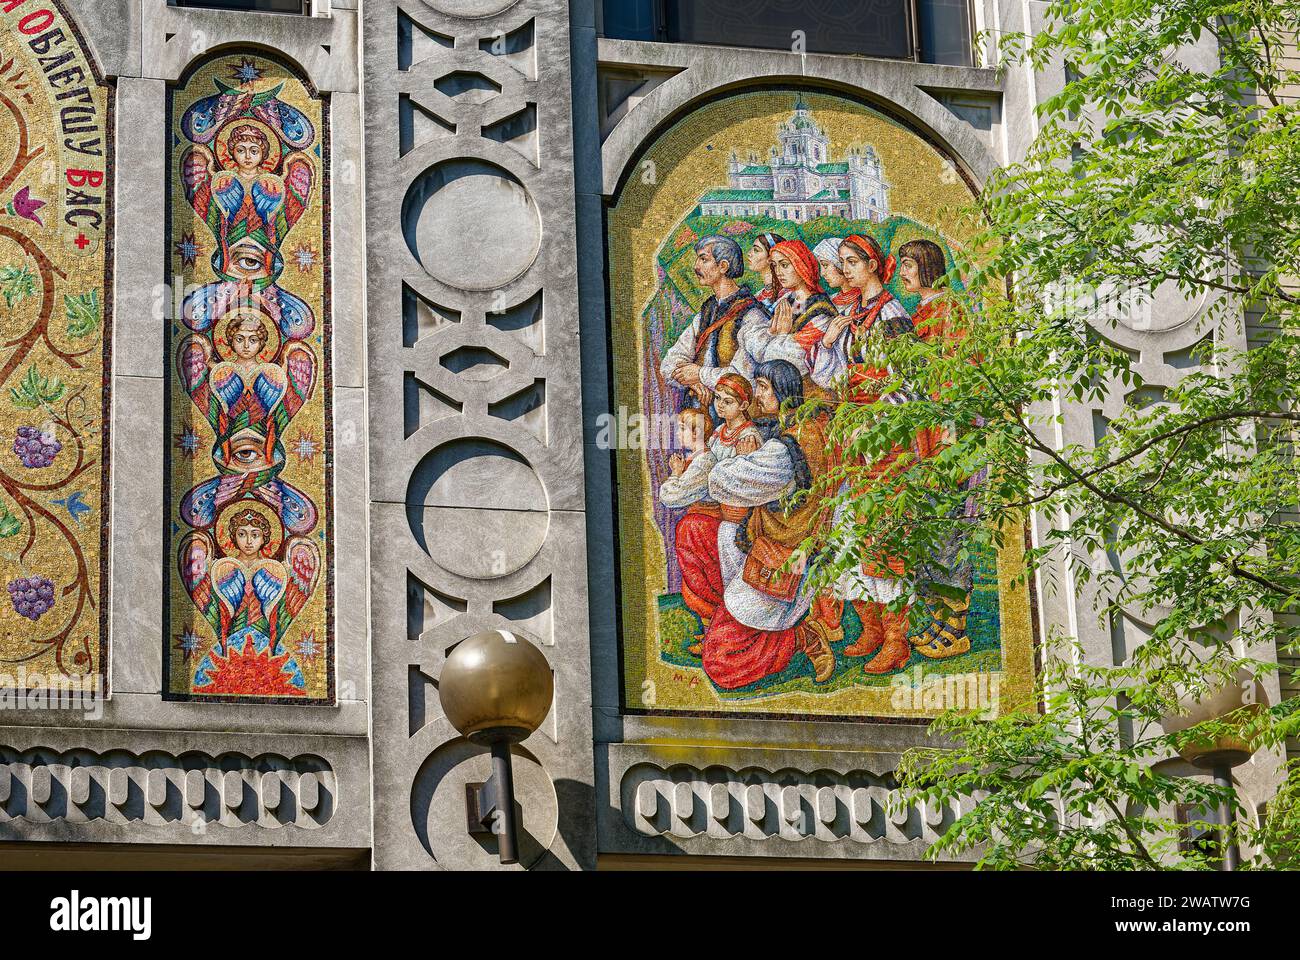 St La chiesa cattolica Ucraina George fu costruita nel 1978, progettata da Apollinaire Osadca in stile revival bizantino con cupola e mosaici dorati. Foto Stock